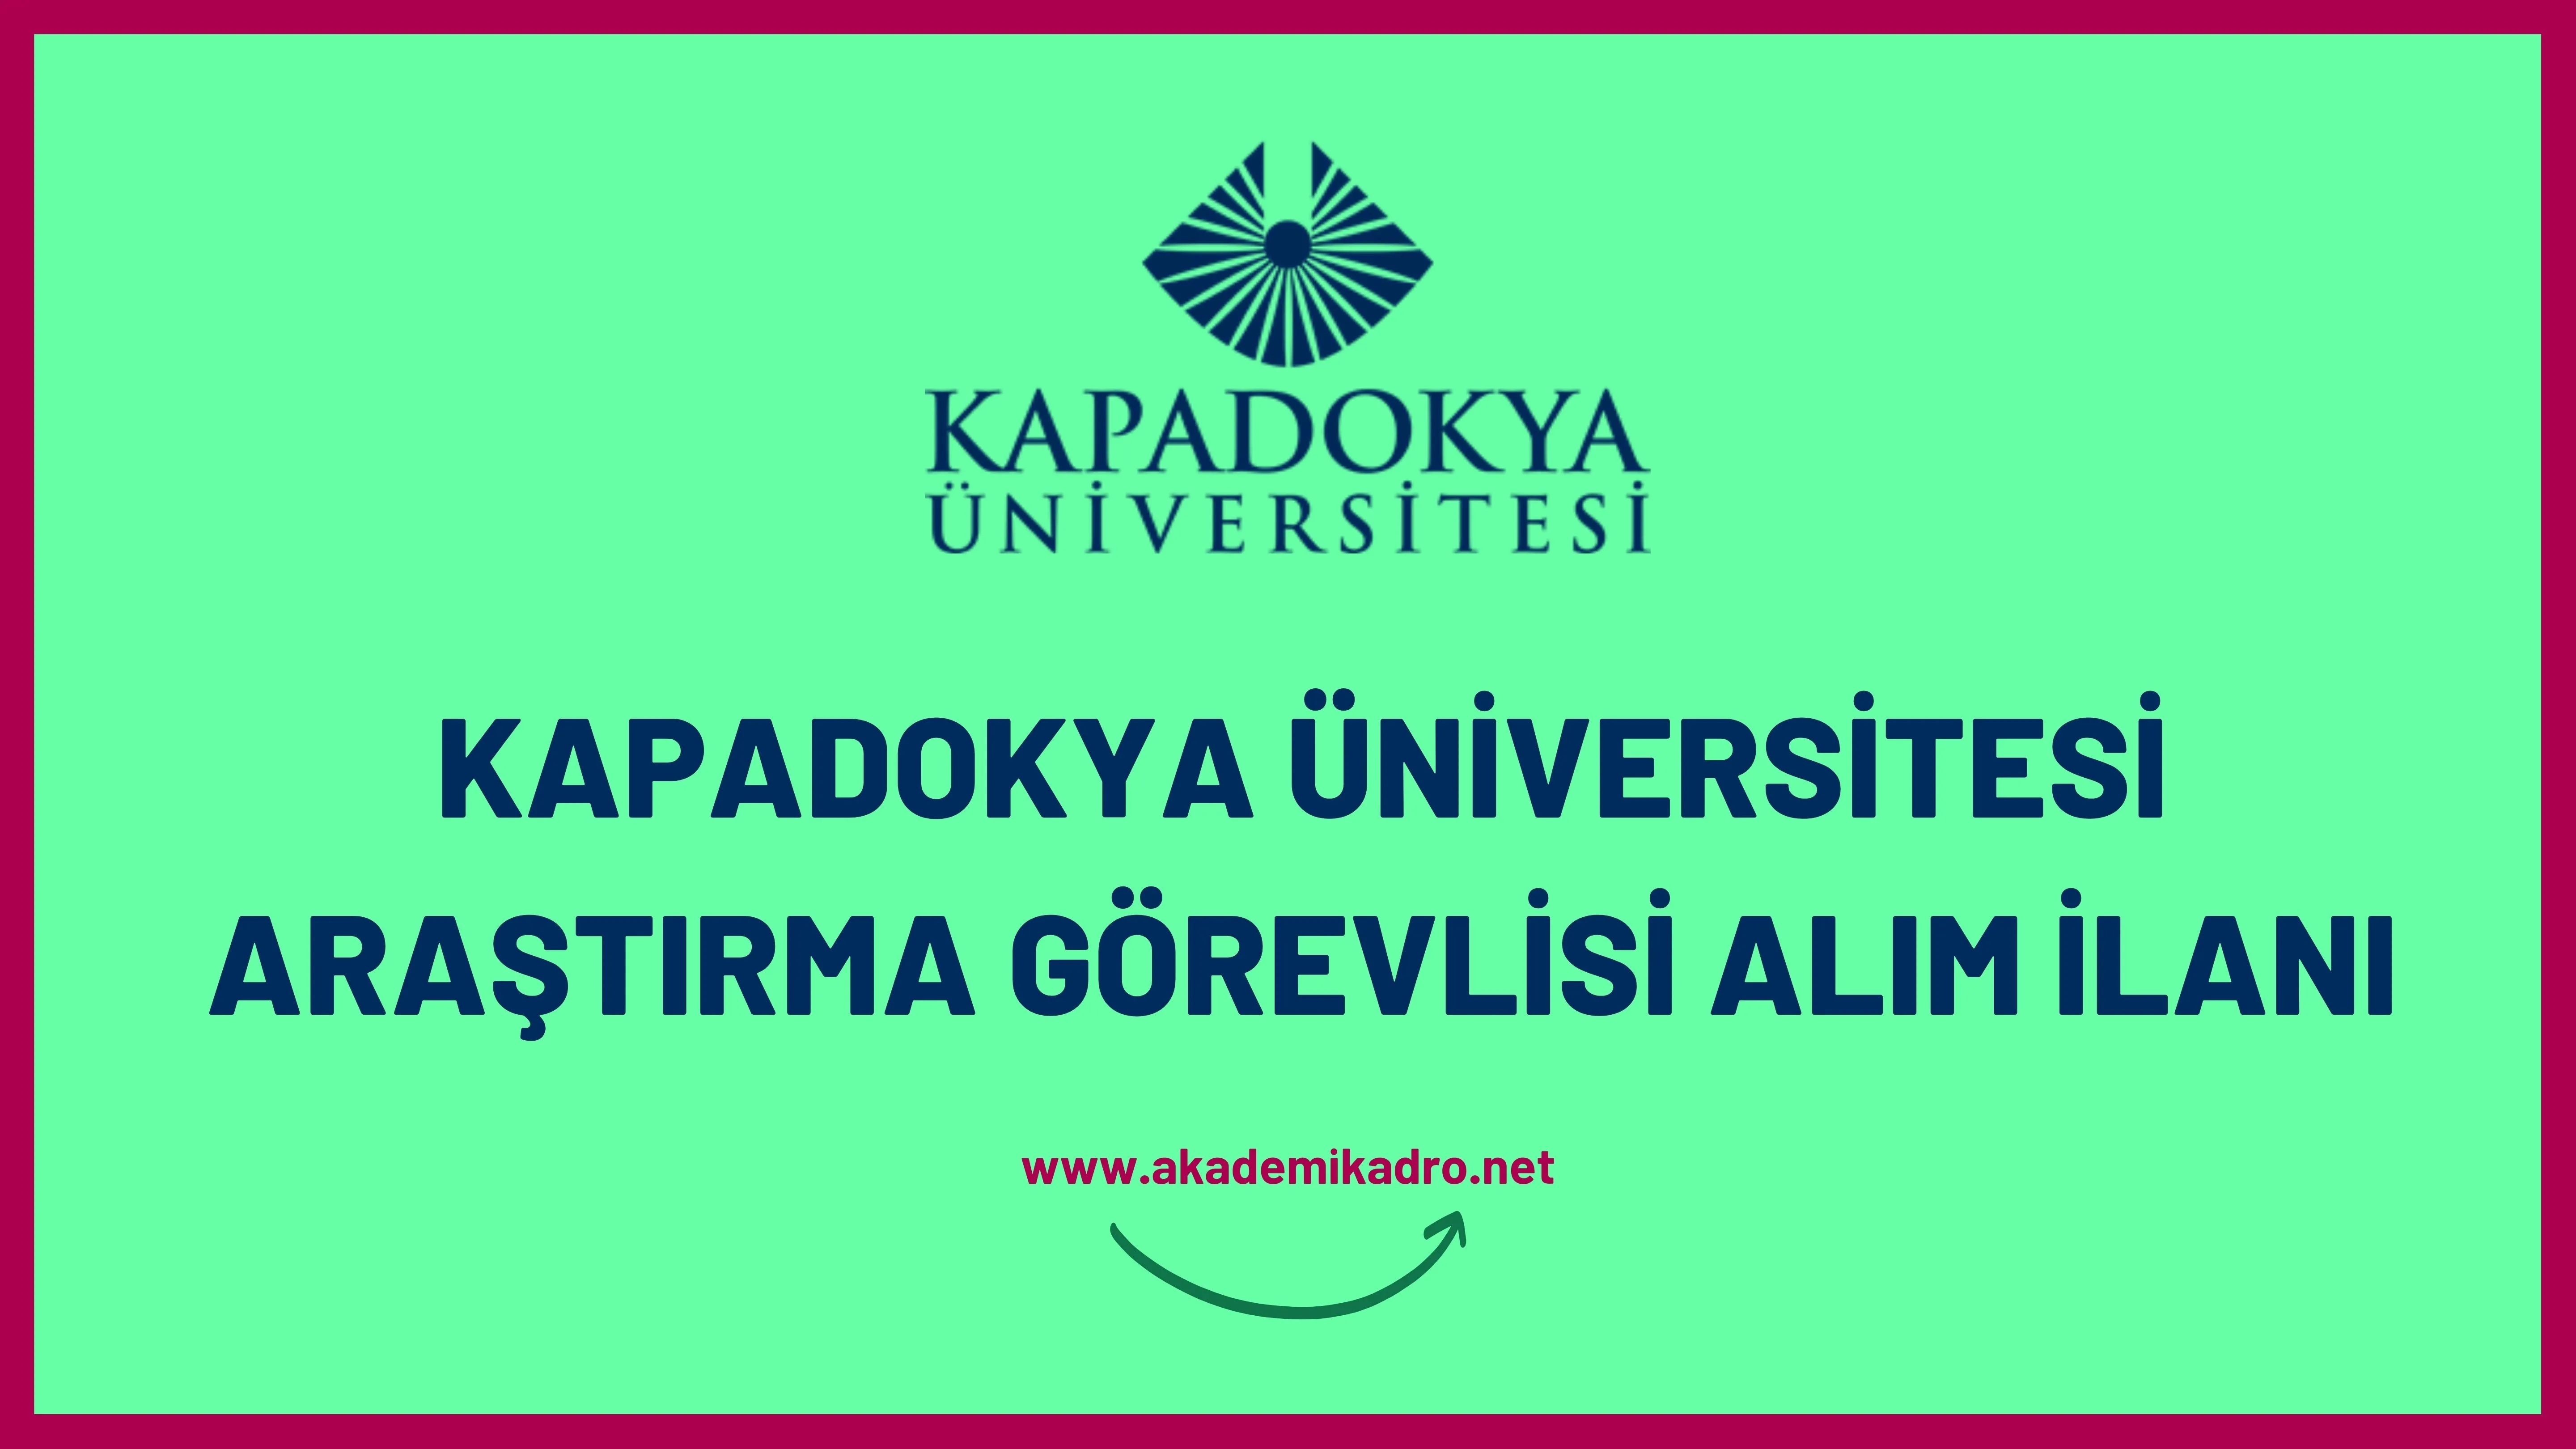 Kapadokya Üniversitesi 3 Araştırma görevlisi alacak. 